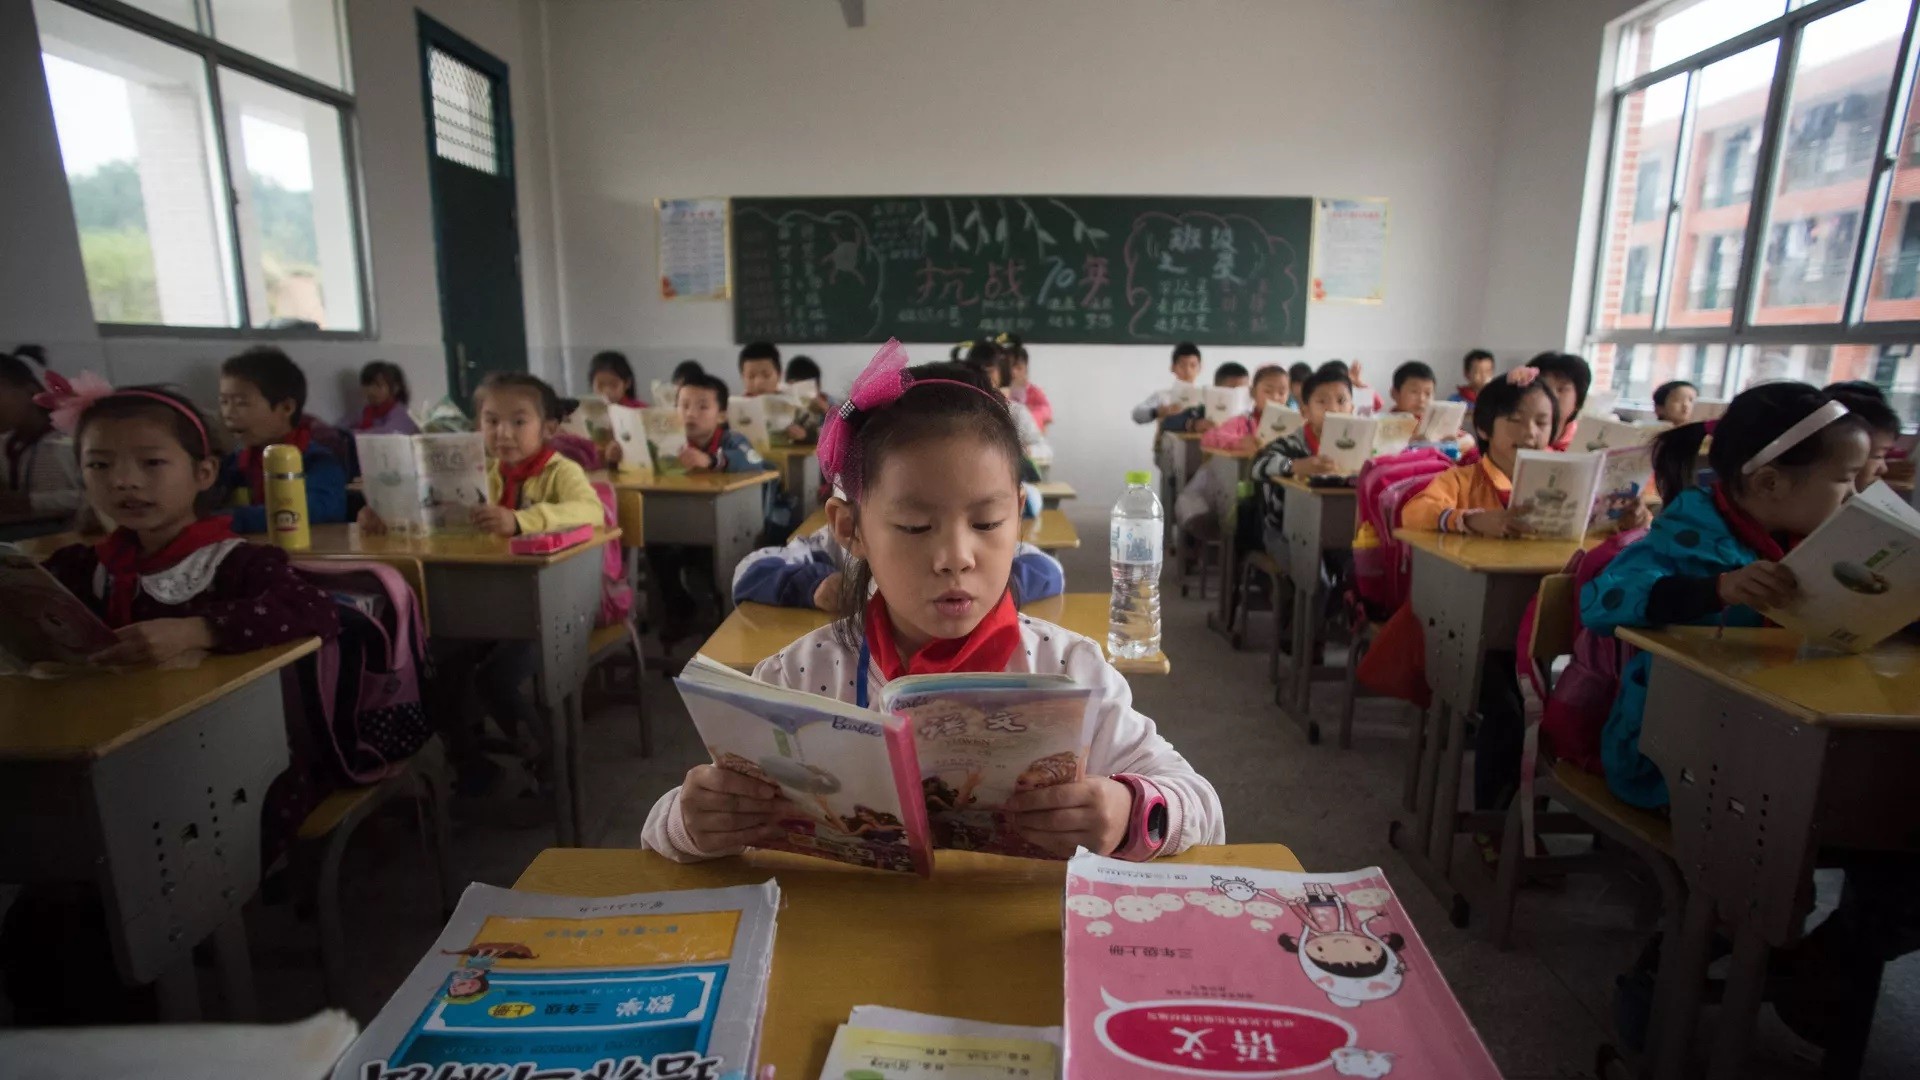 جدل في الصين بسبب "أقلام مزودة بكاميرات" لمراقبة الطلاب.. وزارة التعليم توضح